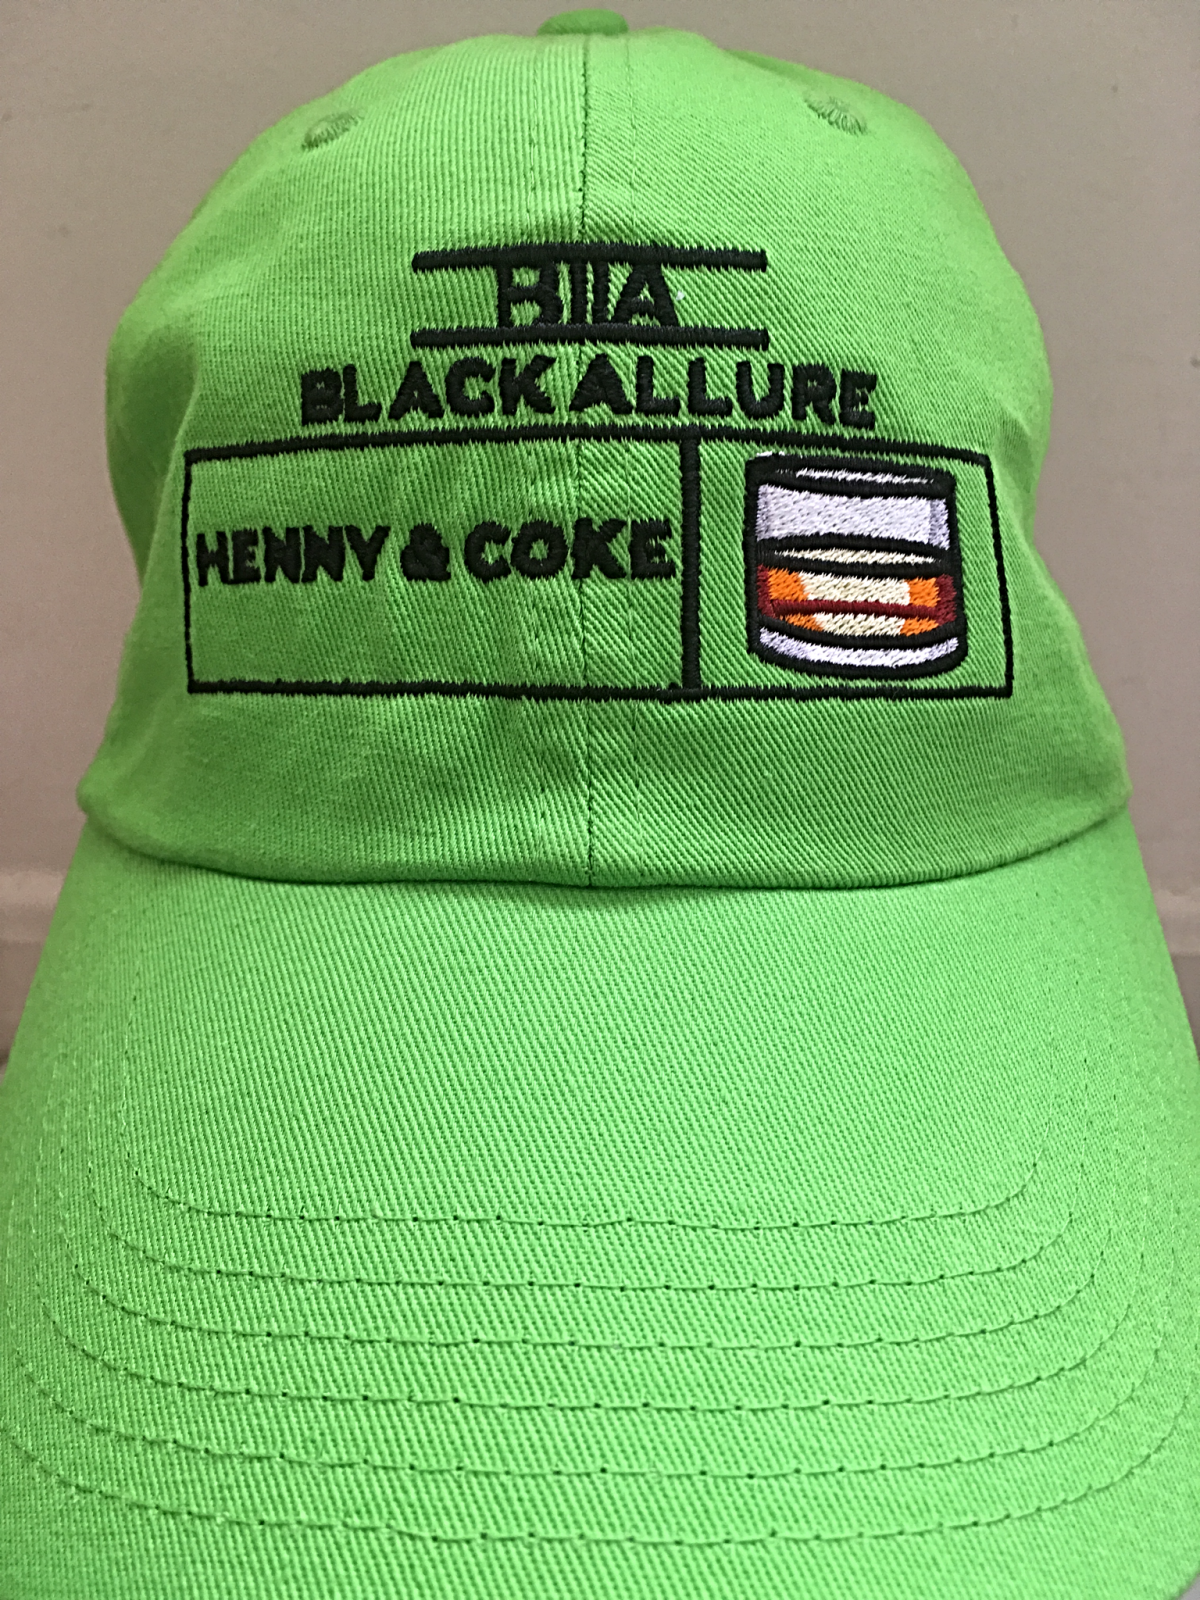 Henny & Coke Allure Neon Green
